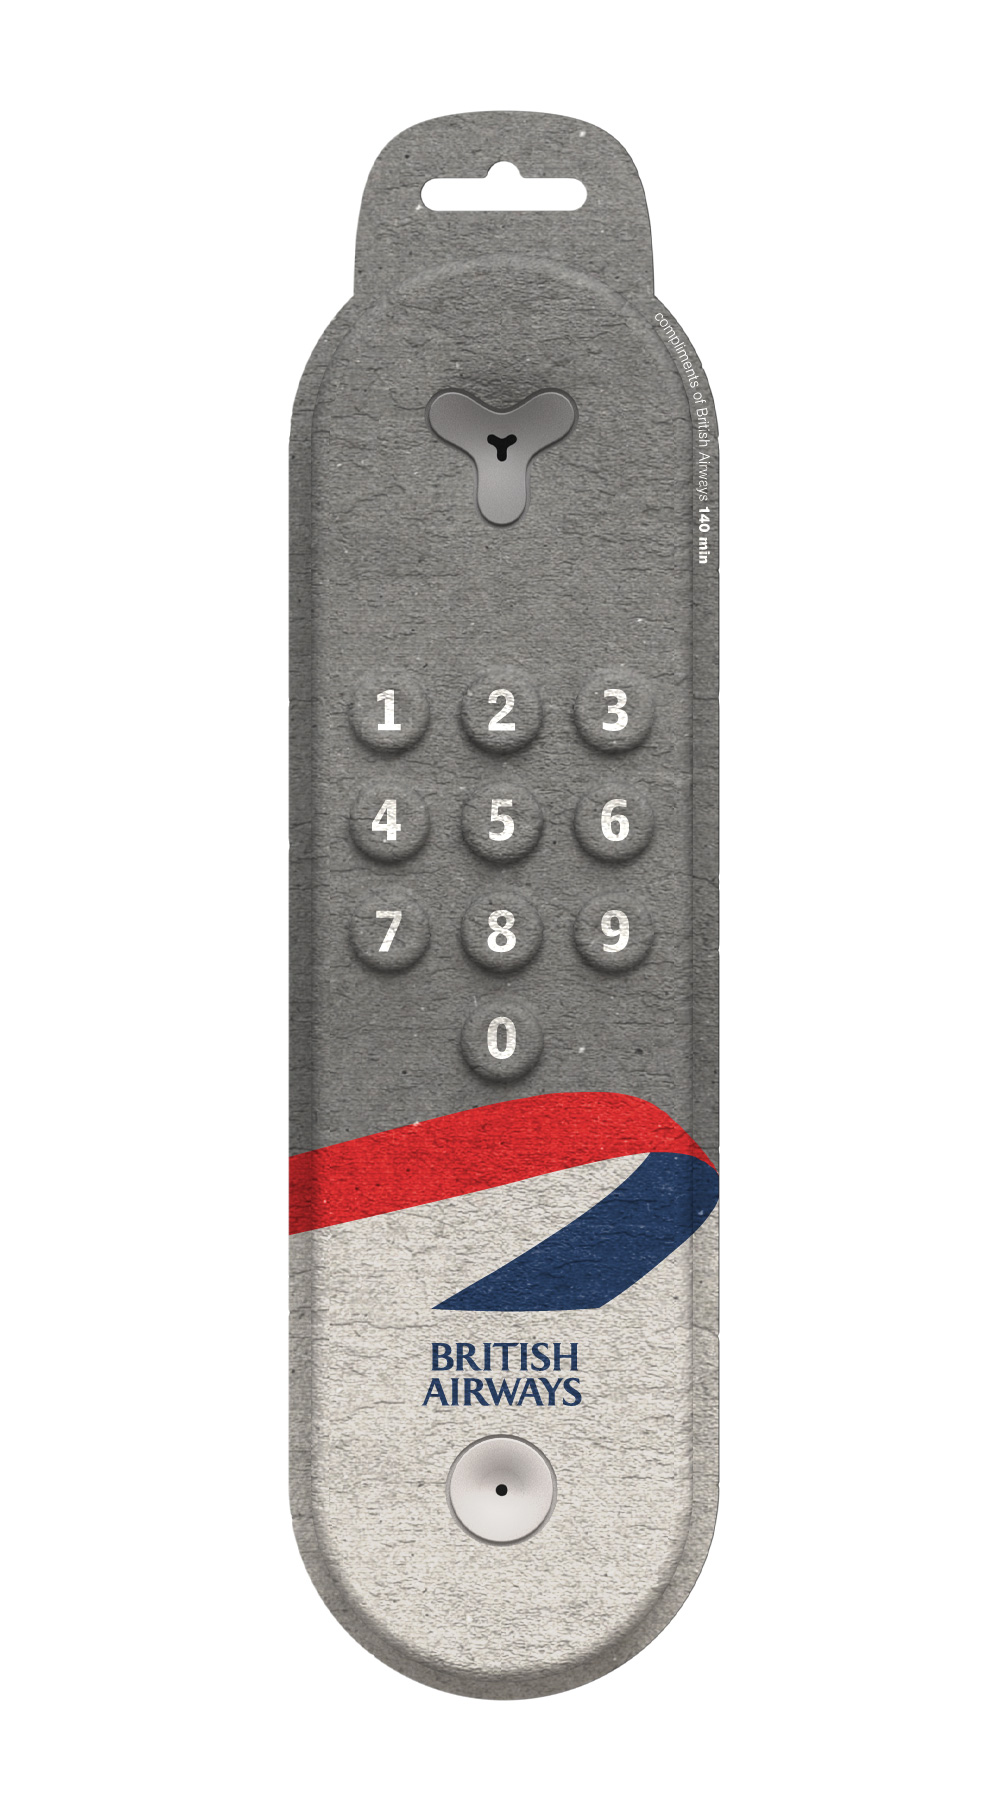 Pulp Phone | Front View | British Airways